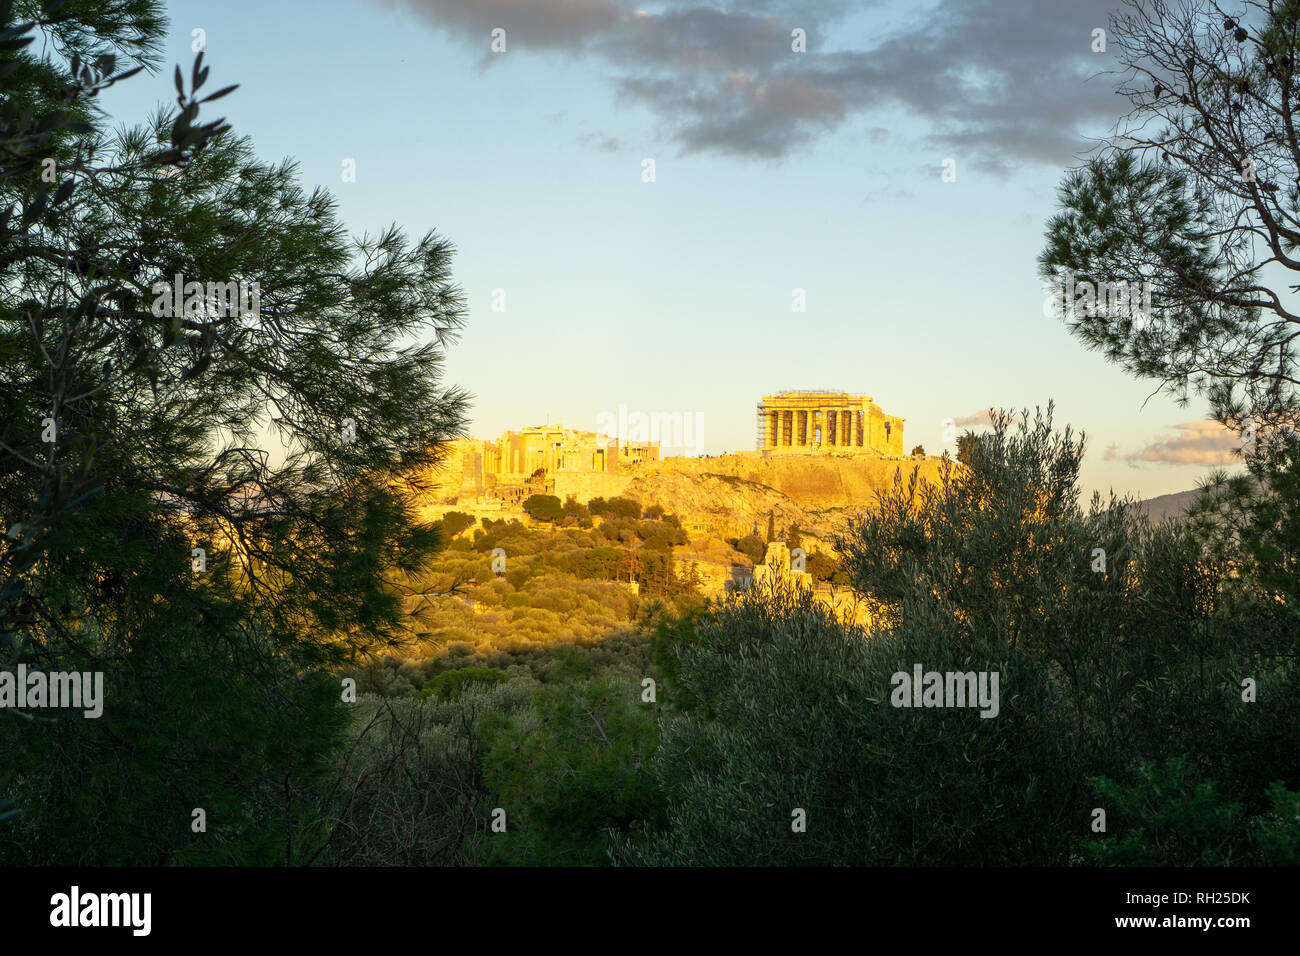 Si desea ver el Partenón de cerca o de lejos, siempre es impresionantemente majestuoso. Foto de stock